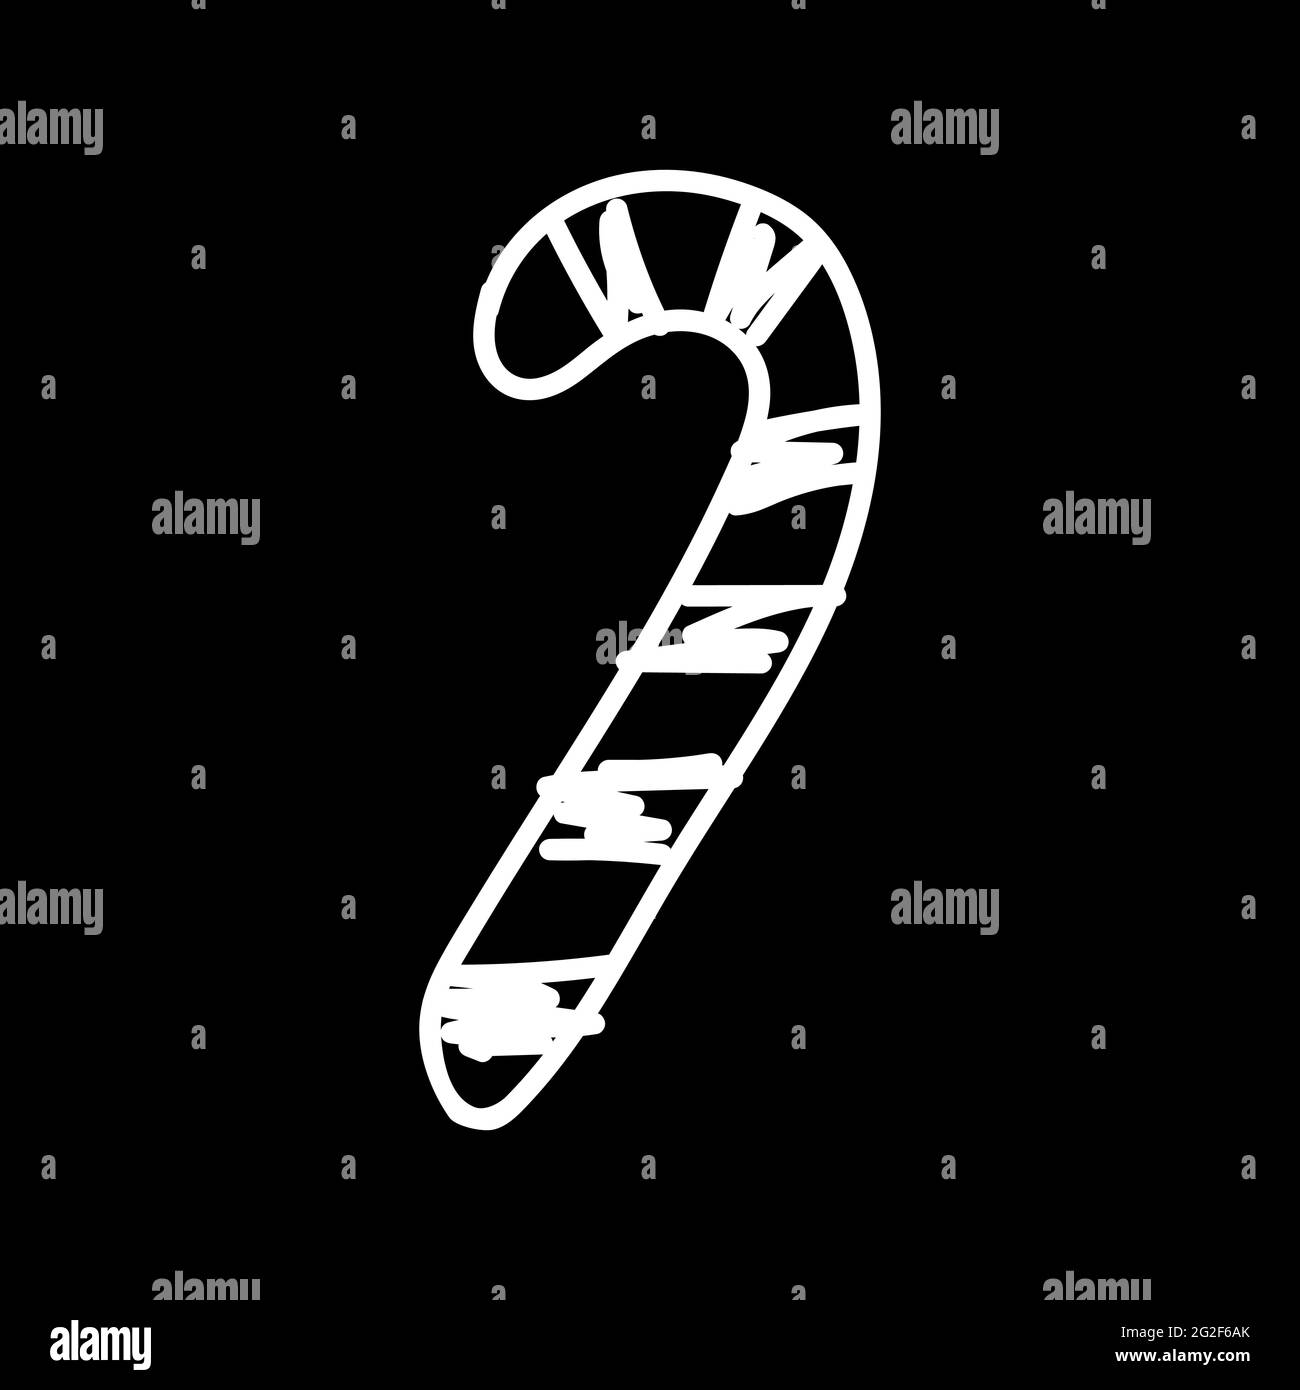 Weißer weihnachtsbonbon-Stock, gezeichnet von unordentlichen Linien auf schwarzem Hintergrund. Lakonisches Symbol des neuen Jahres. Verworrene Linien von festlichem Dekor. Pepperm Stock Vektor